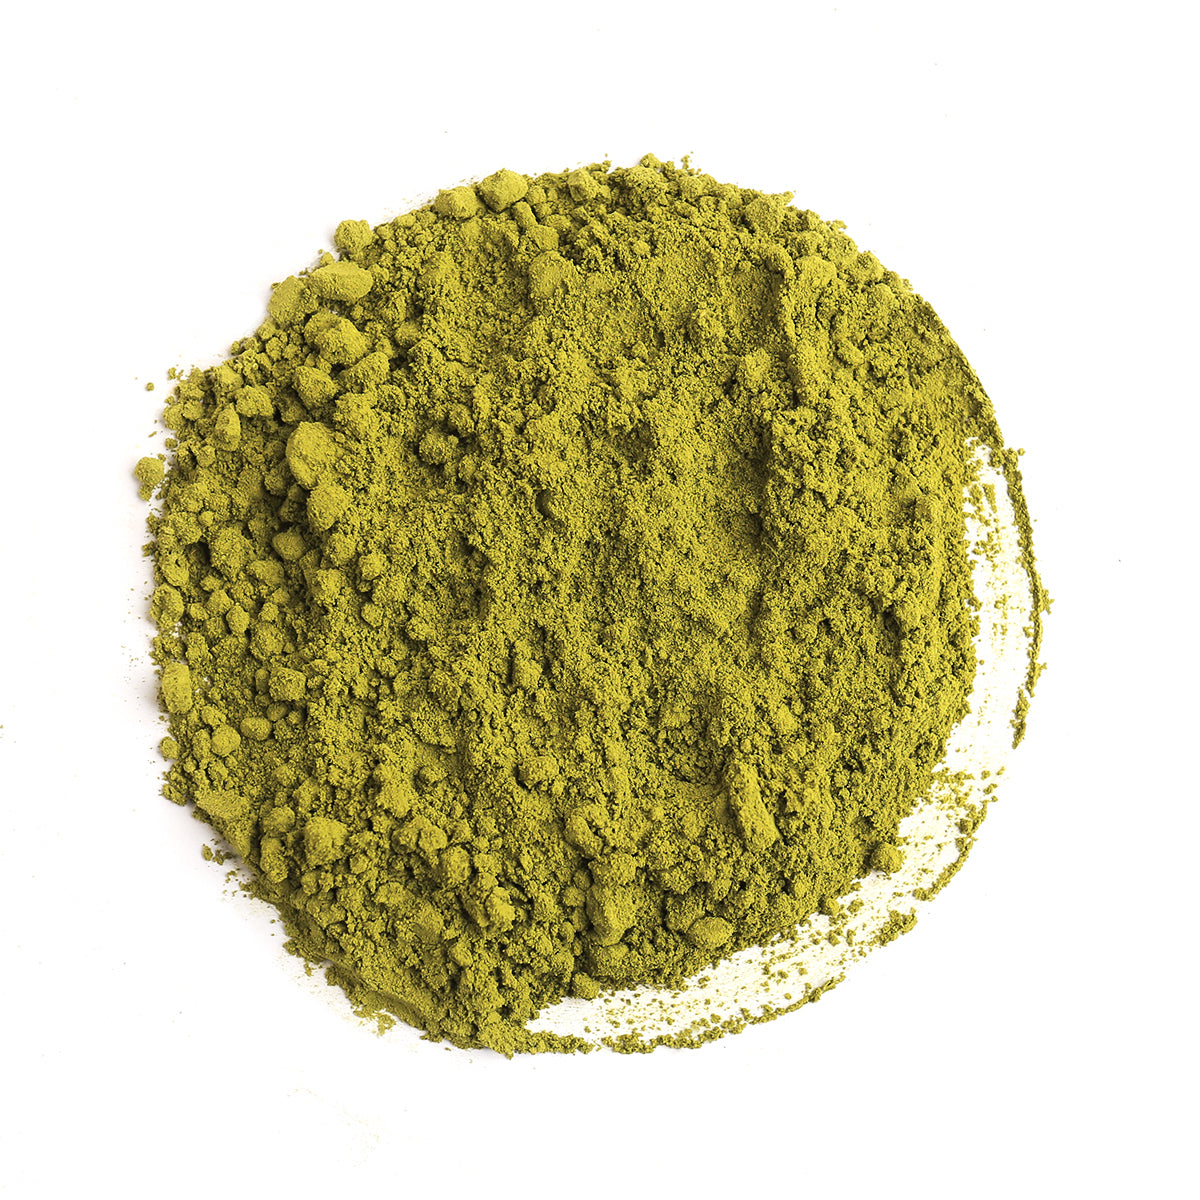 3 Tasty Matcha Green Tea Recipe Treats